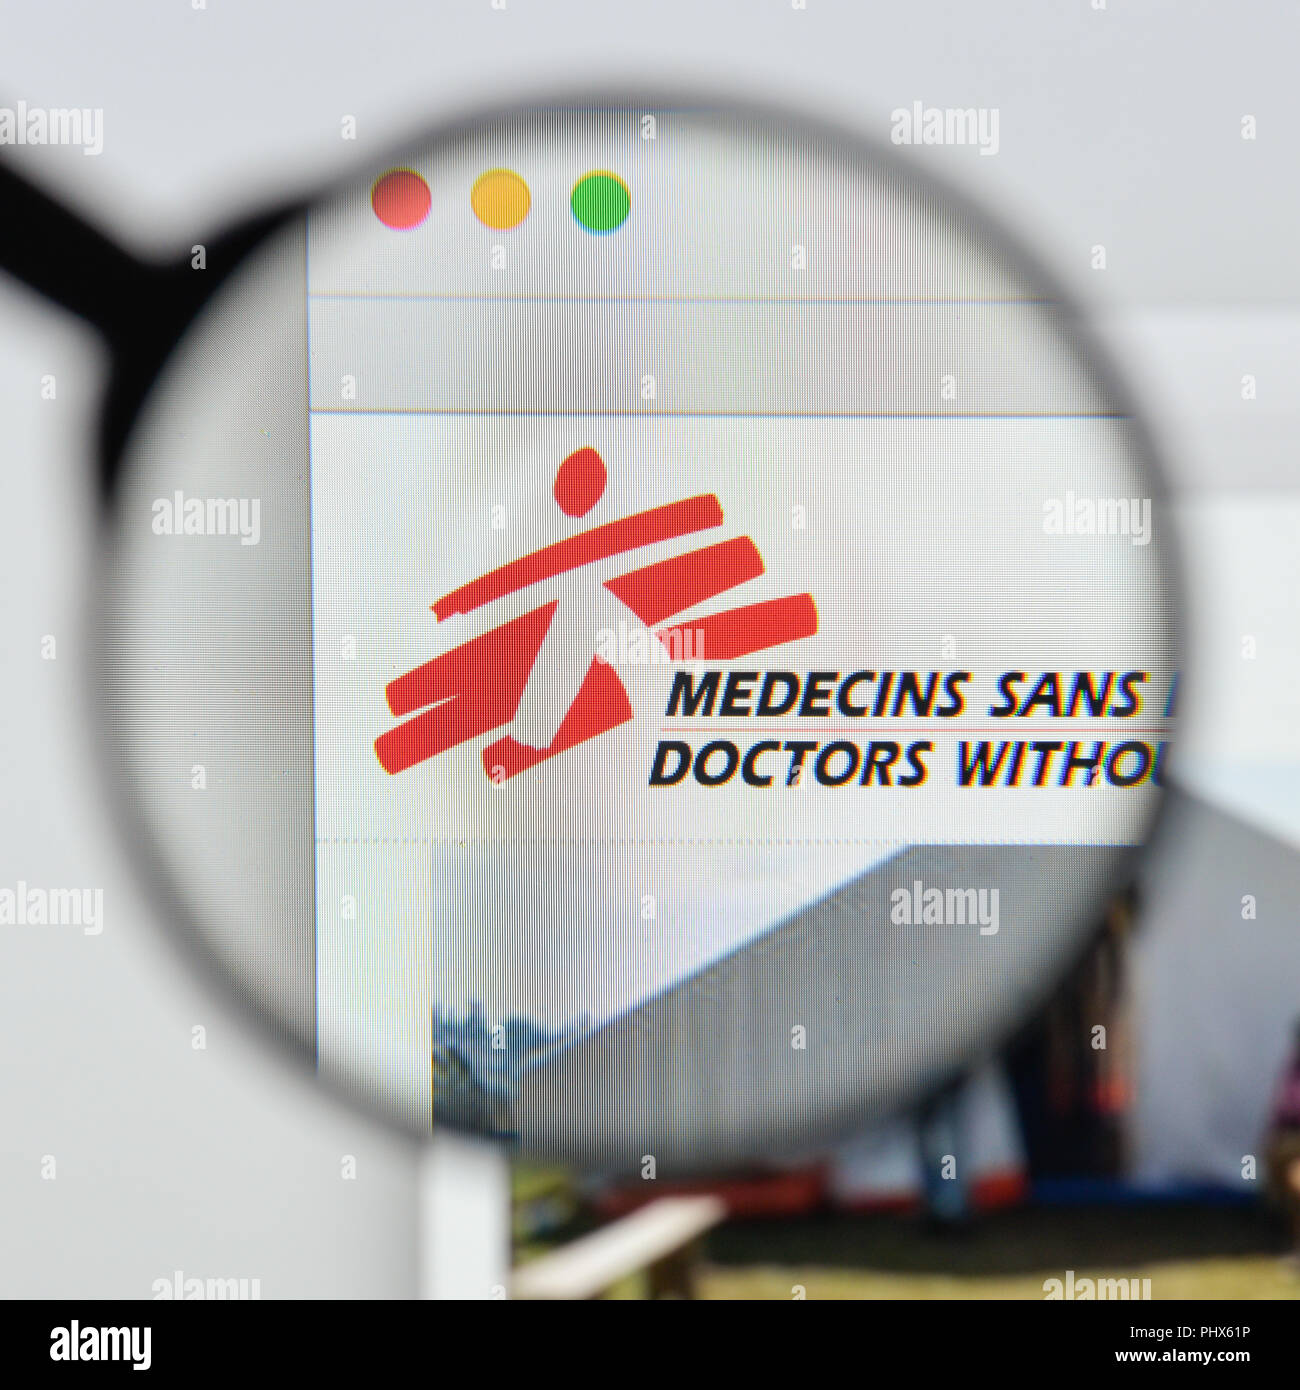 Milan, Italie - 20 août 2018 : Les Médecins sans frontières Accueil du site. Visible le logo de Médecins sans frontières. Banque D'Images